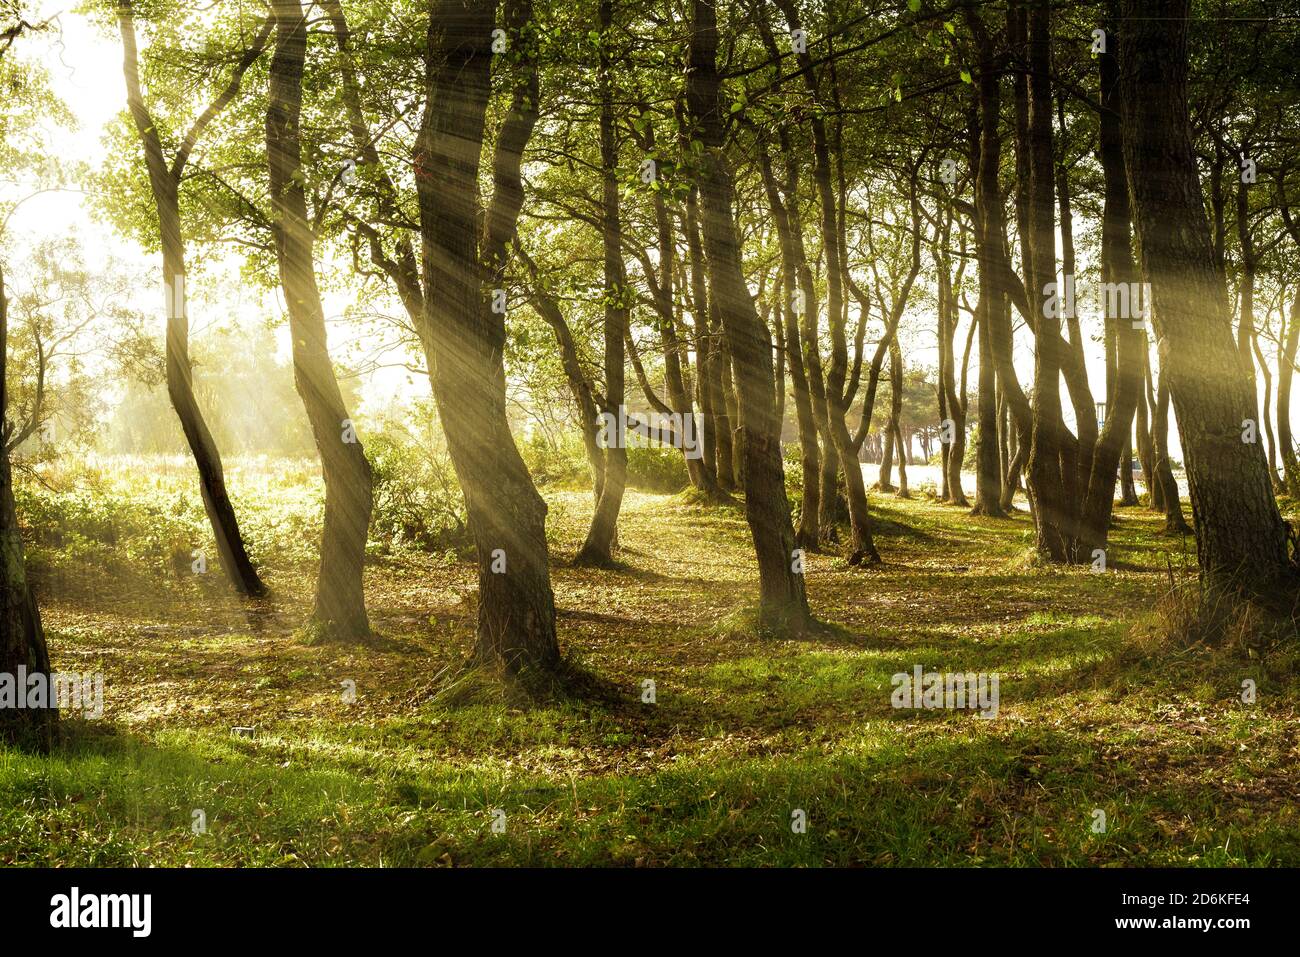 Las vigas de sol caen a través de las hojas de árboles altos en un hermoso bosque al mediodía. Foto de stock